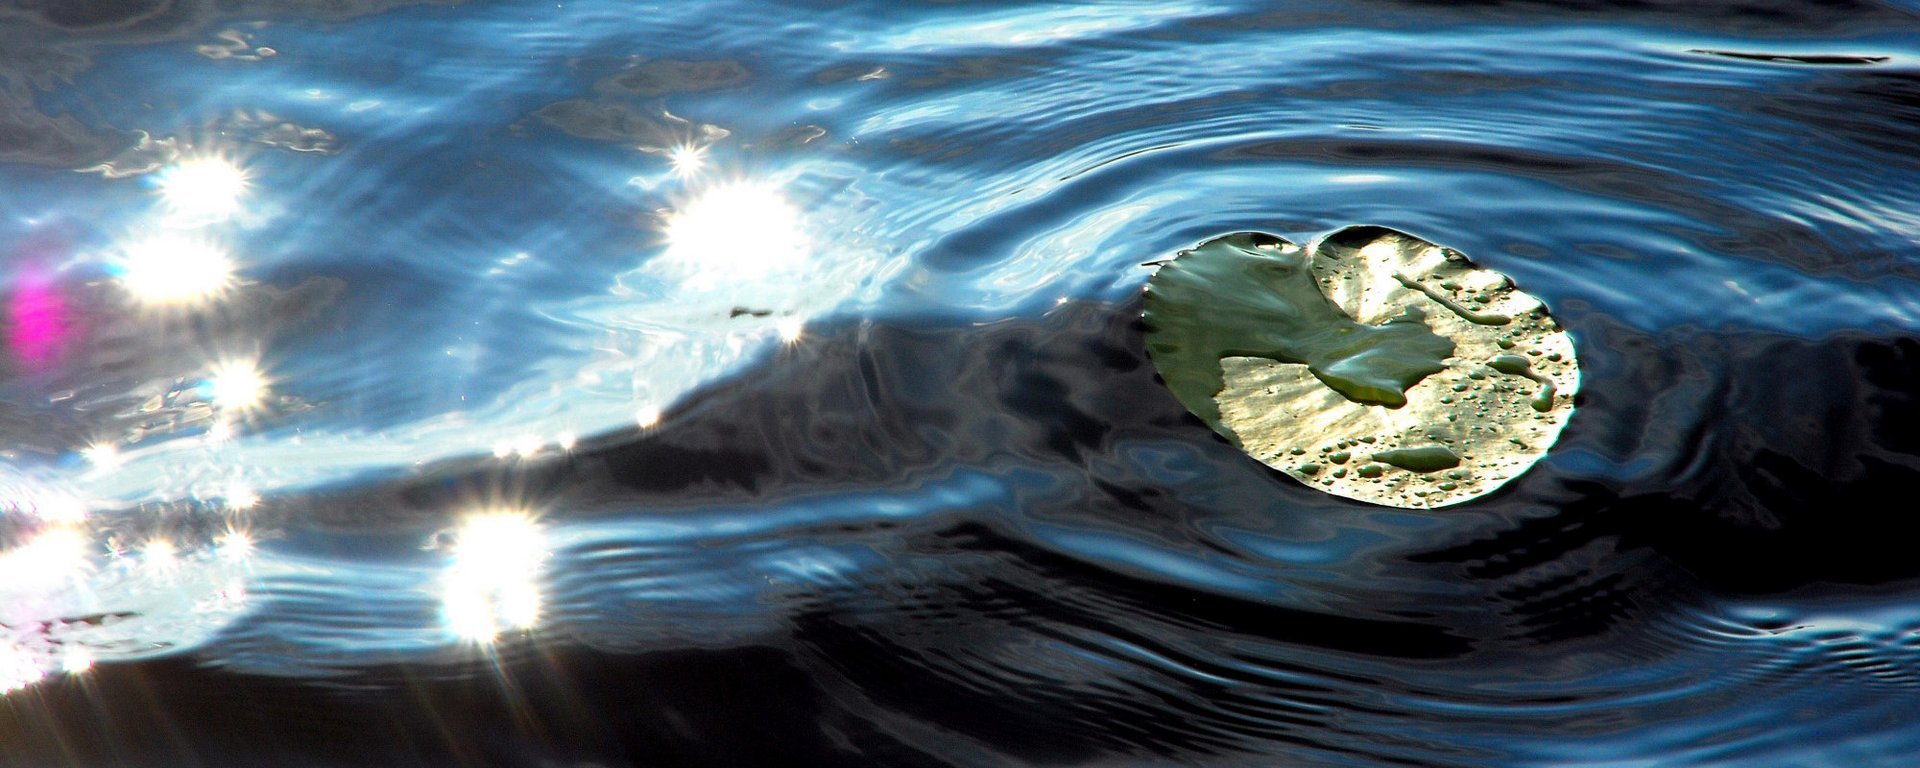 ein Seerosenblatt im See - schöne Sonnenspiegelung und kreisrunden Wellen